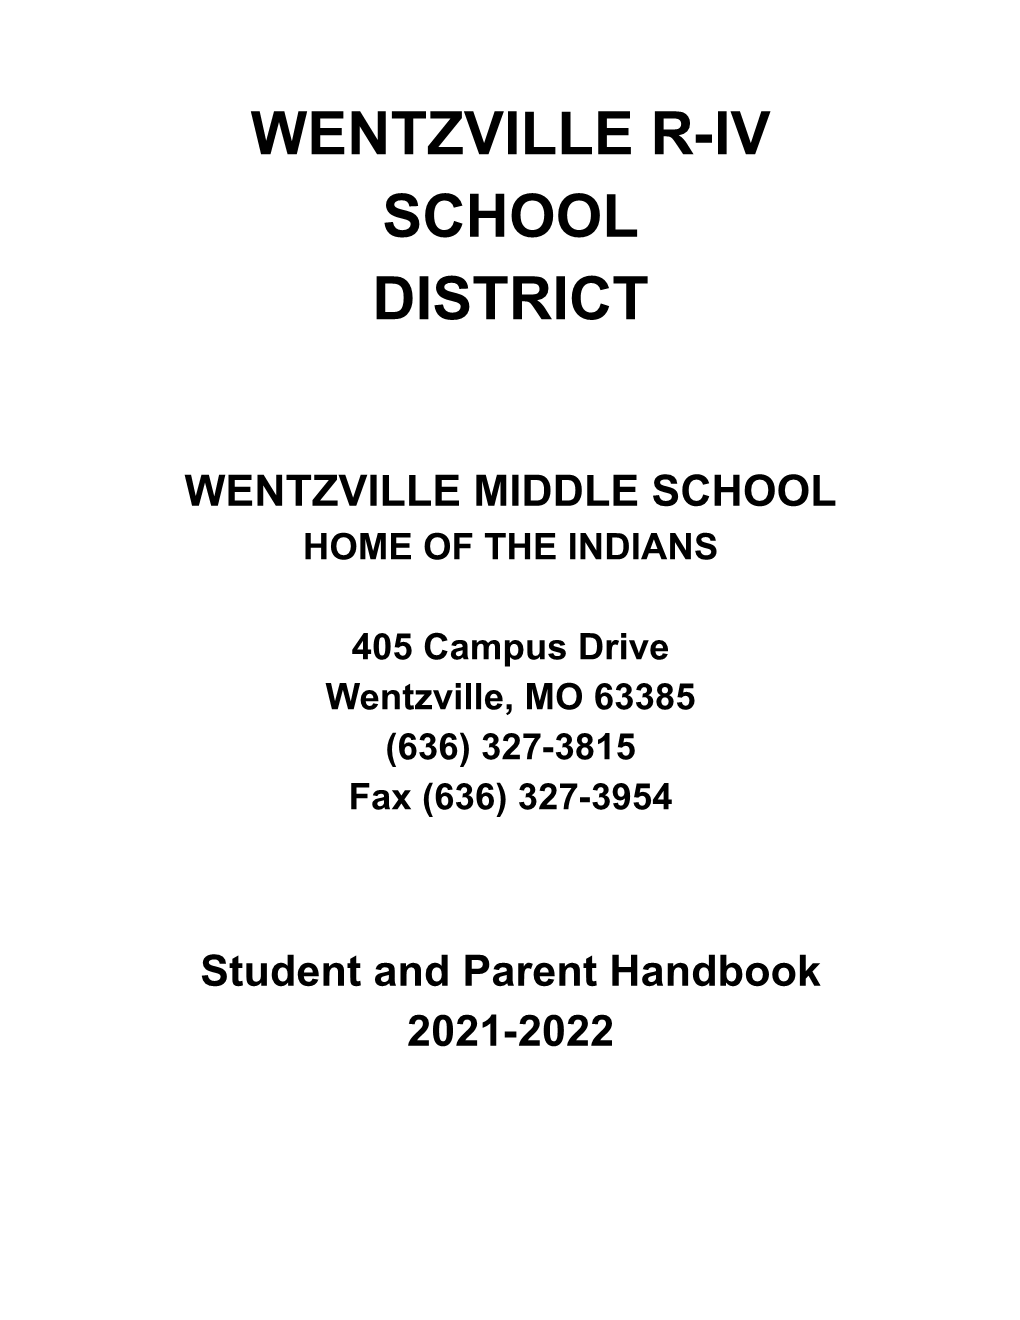 WMS Parent/Student Handbook 2021-2022